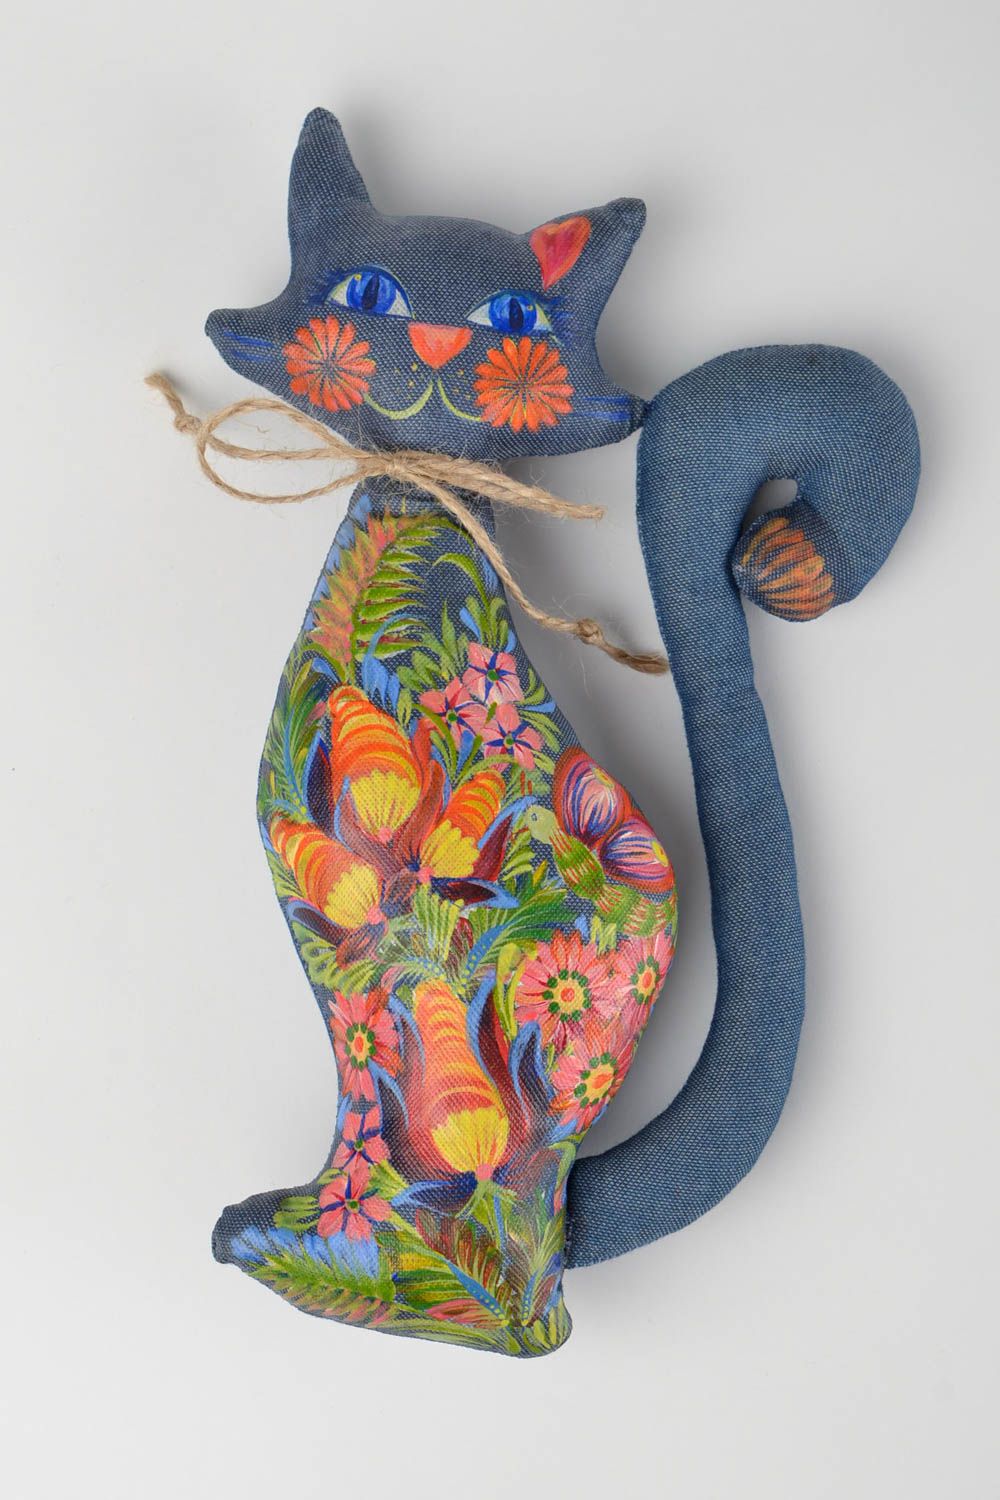 Peluche chat en jean Jouet fait main peint à la gouache Cadeau pour enfant photo 1